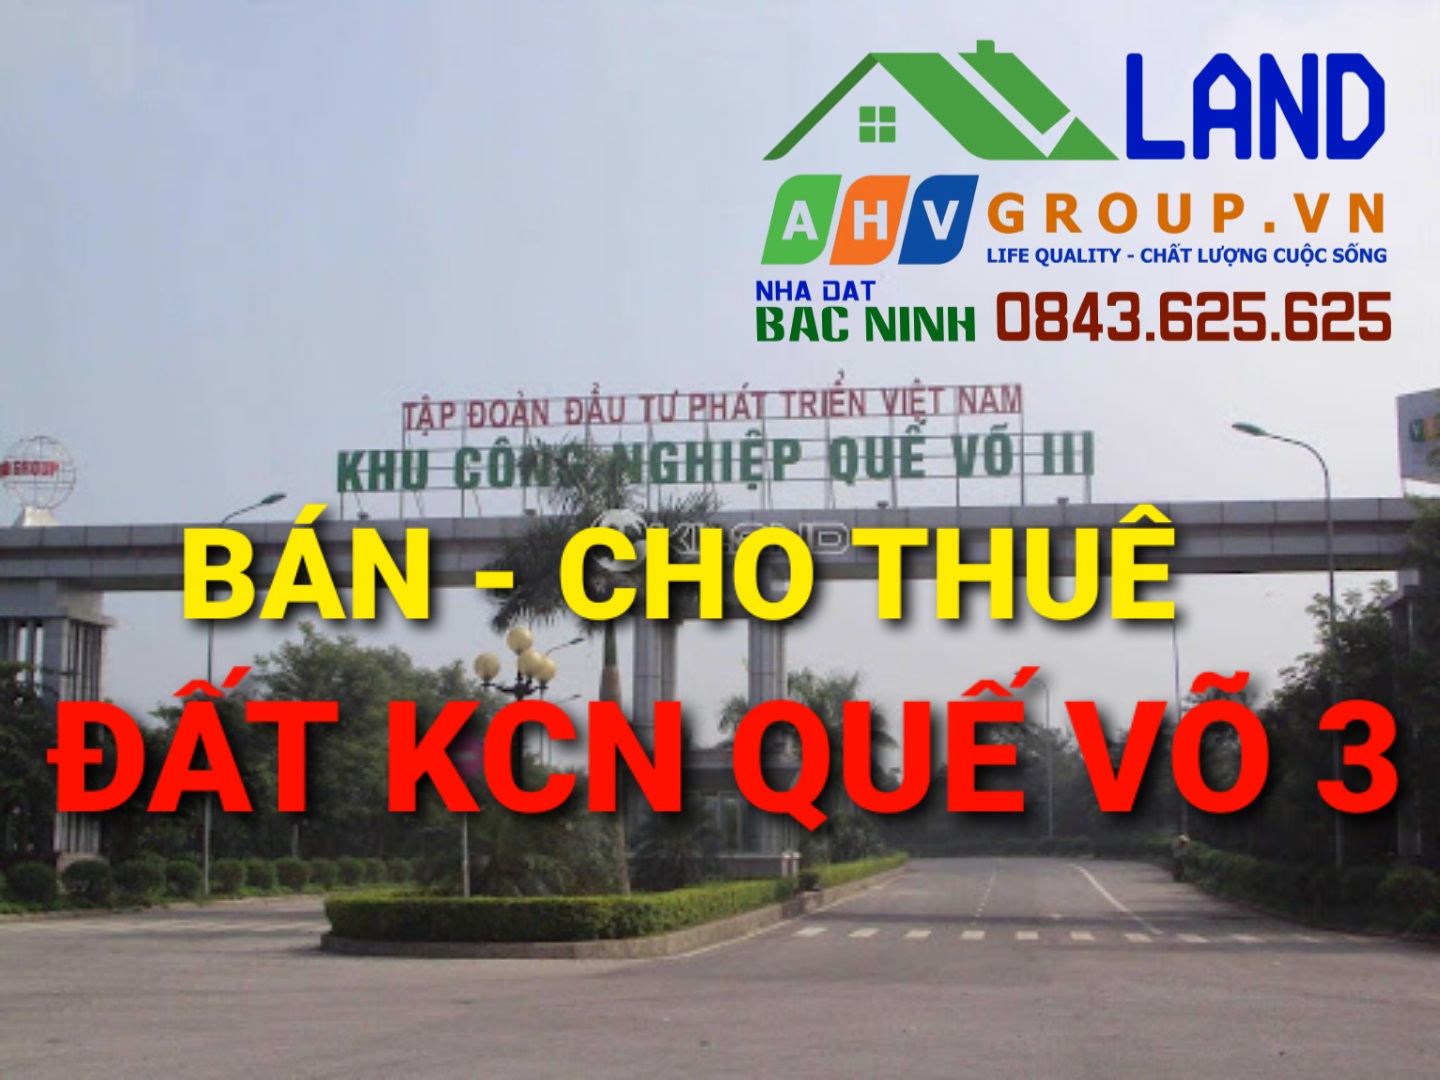 Bán, Cho thuê Đất, Nhà xưởng - Khu công nghiệp Quế Võ 3 - Bắc Ninh